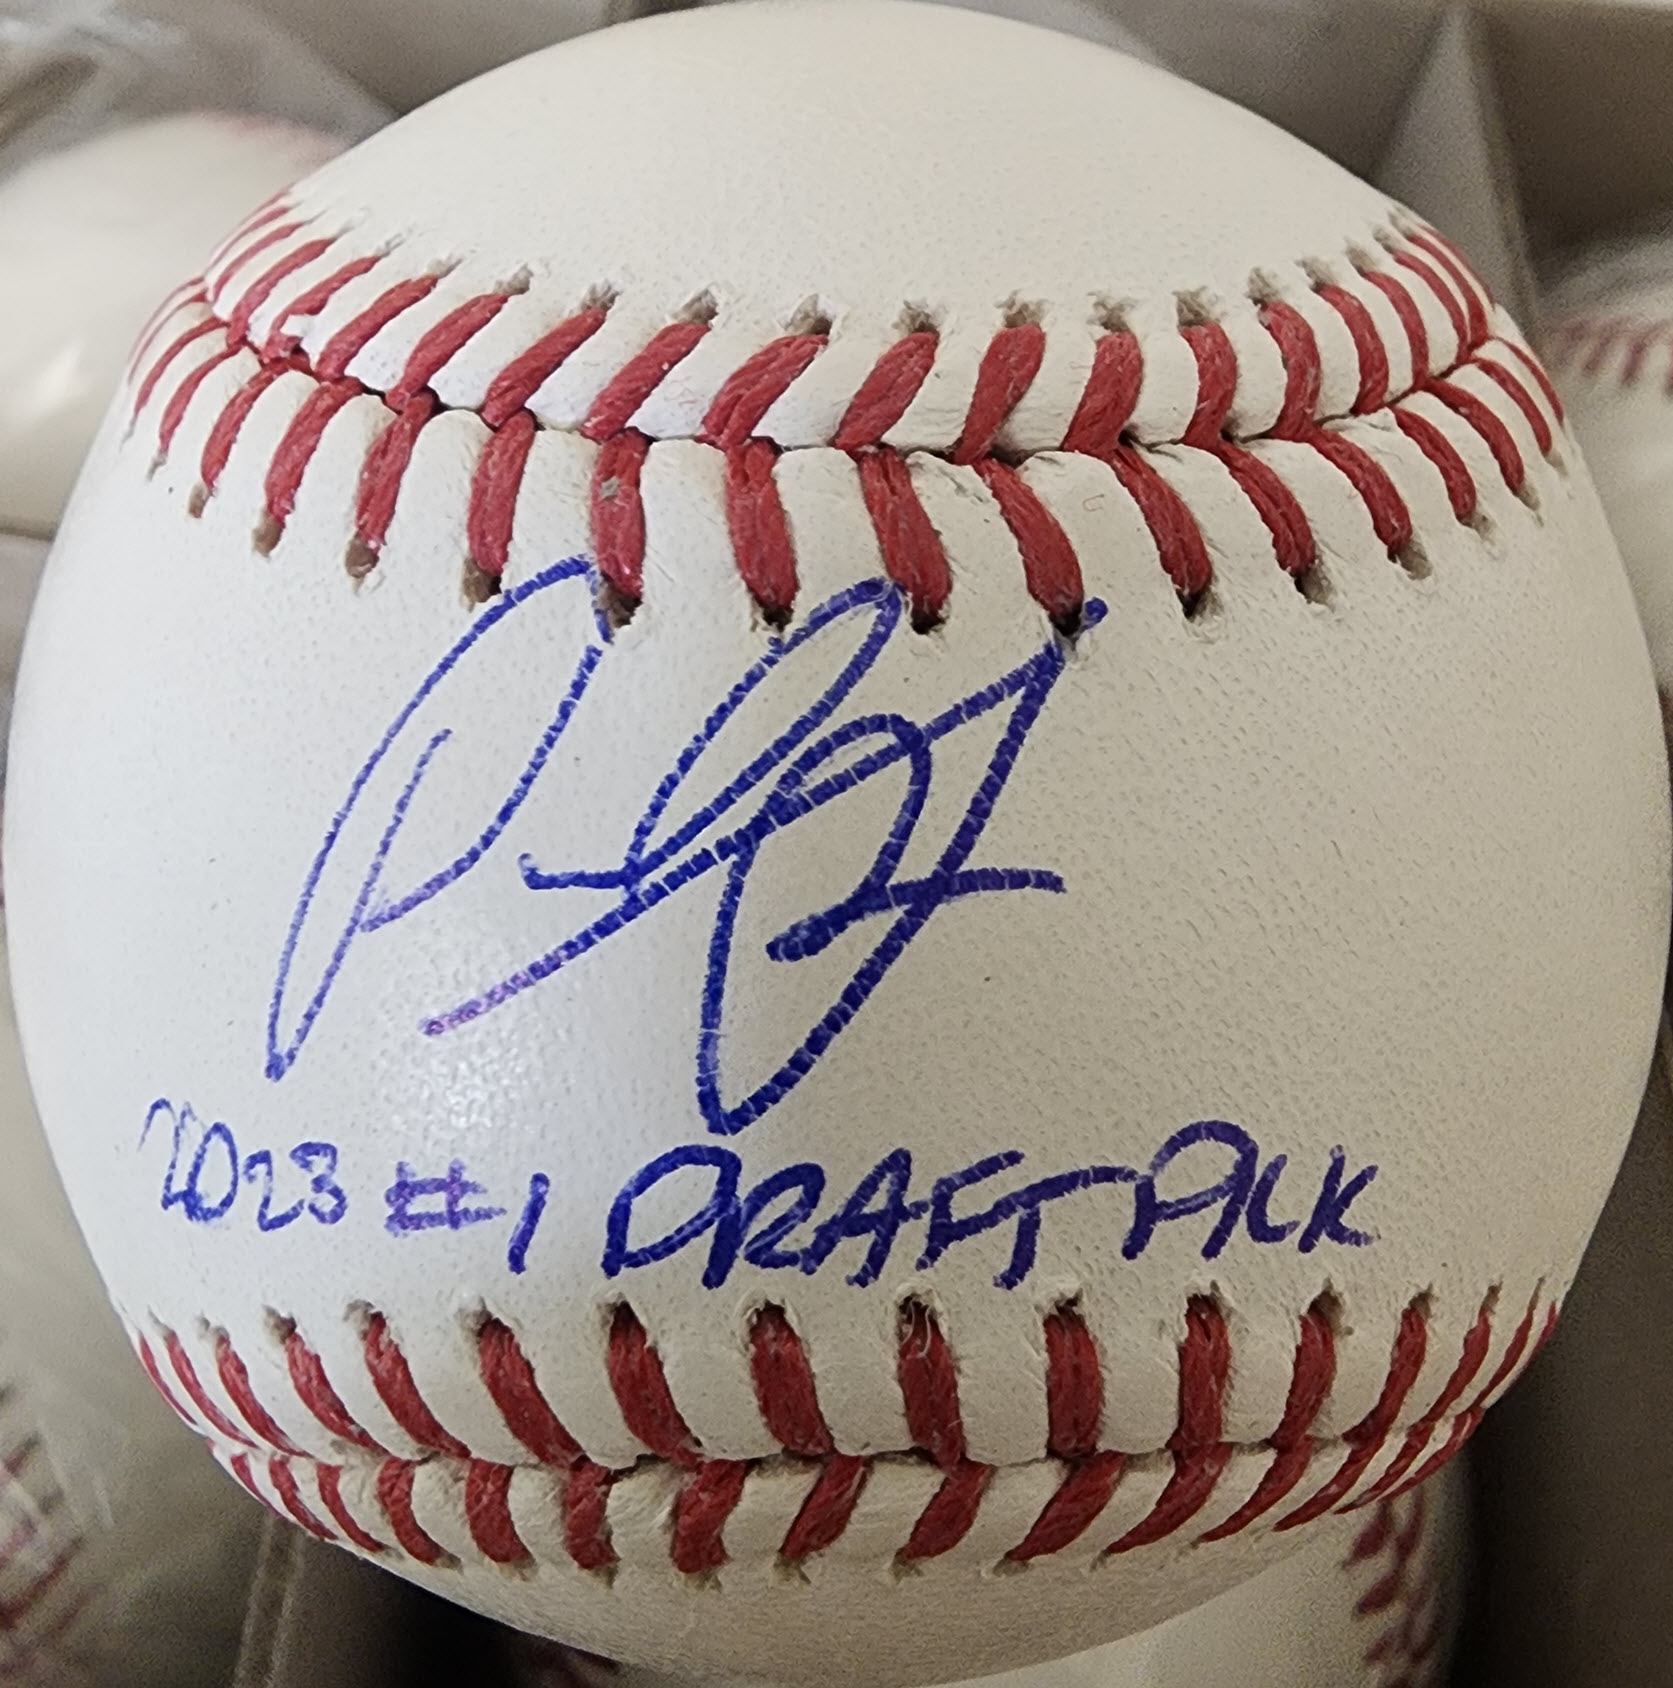 Paul Skenes Autographed Baseball Inscribed 2023 #1 Draft Pick v1